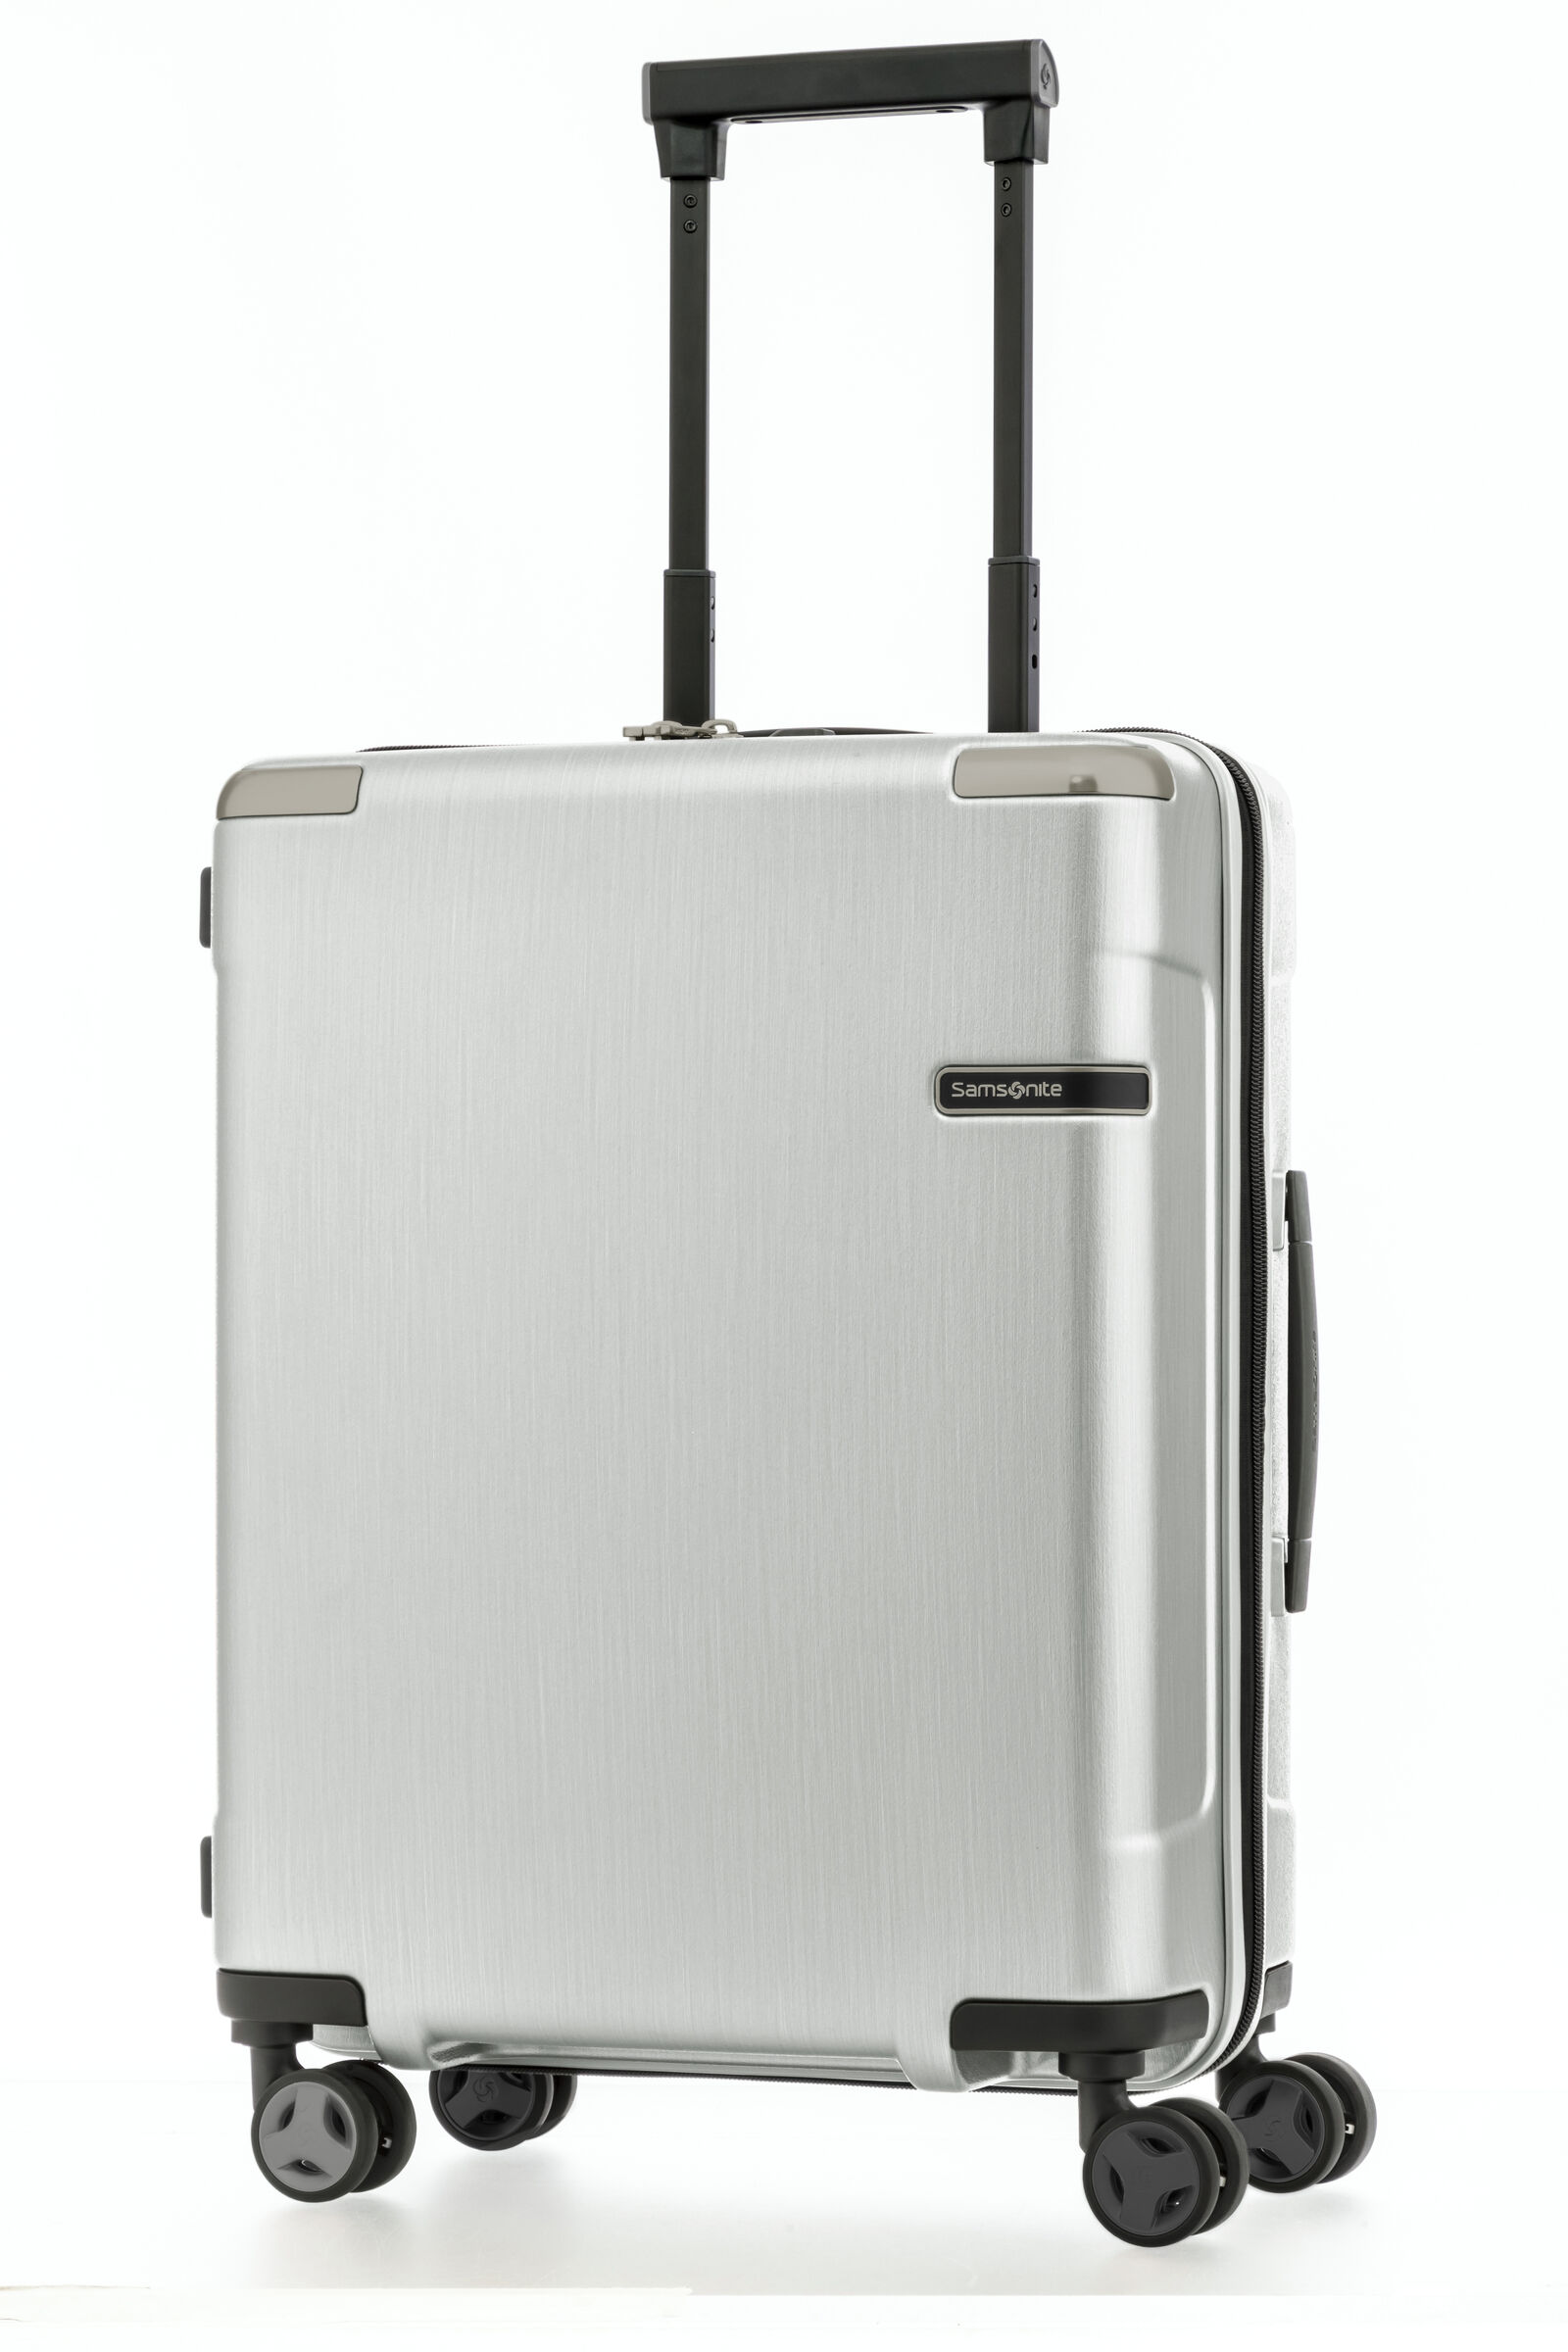 スーツケース   サムソナイト   SPINNER55/20  EVOA